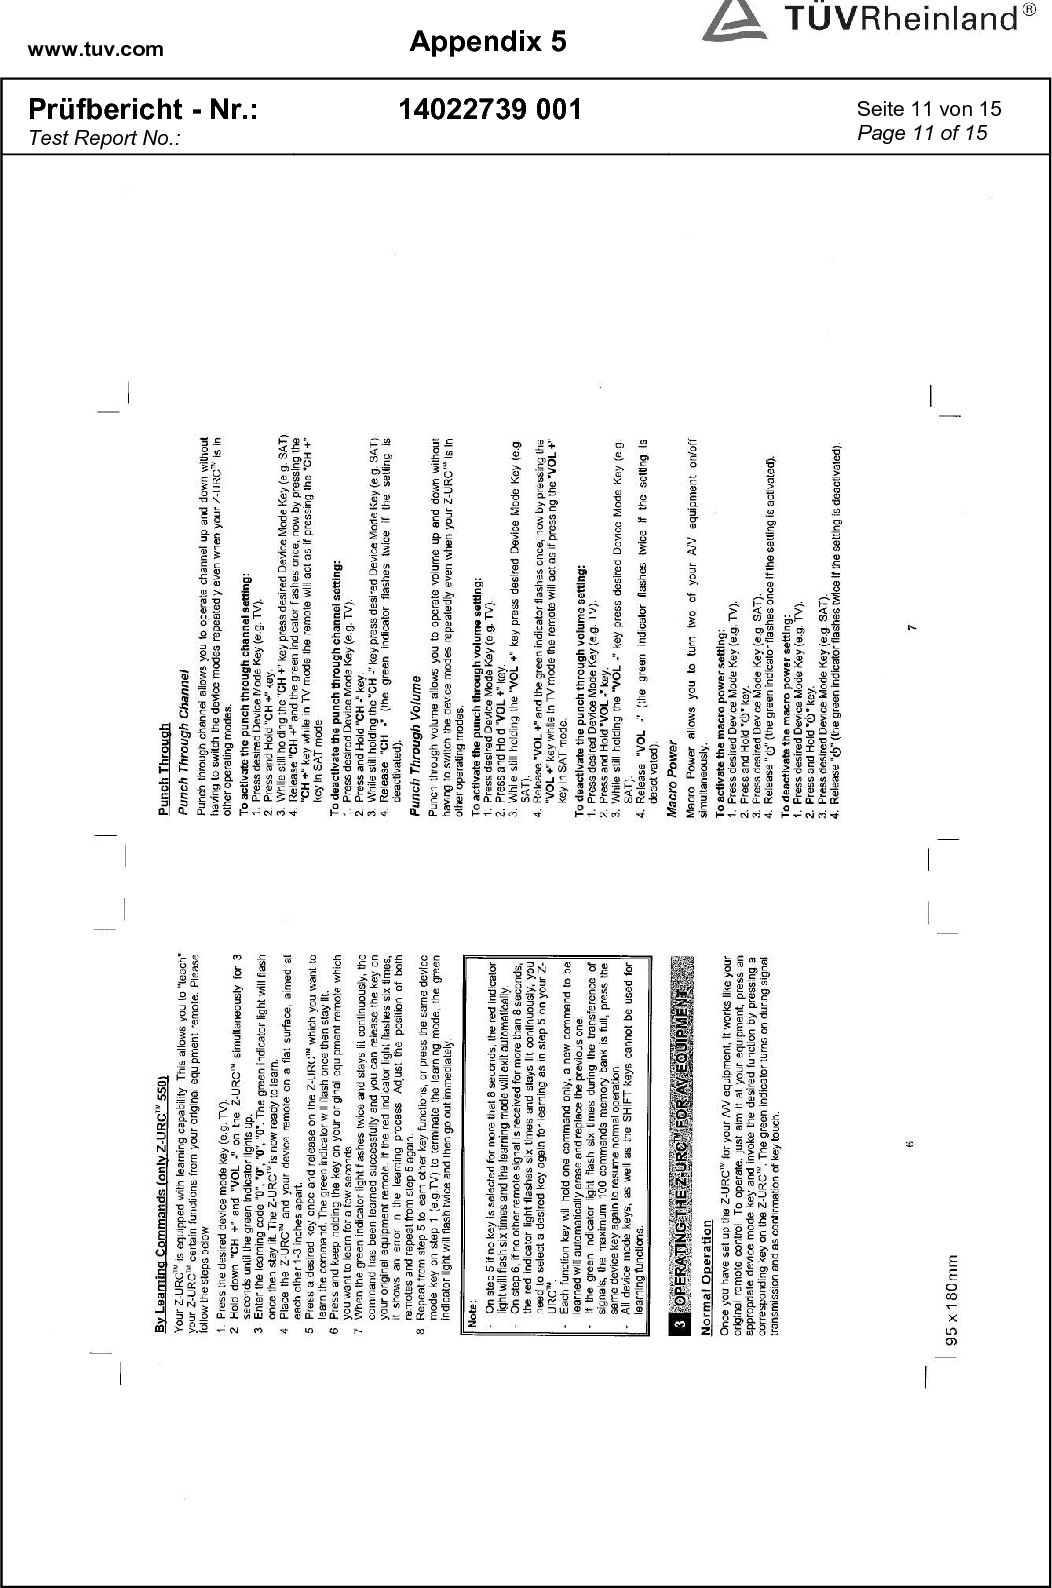 www.tuv.com  Appendix 5  Prüfbericht - Nr.: Test Report No.: 14022739 001  Seite 11 von 15 Page 11 of 15   